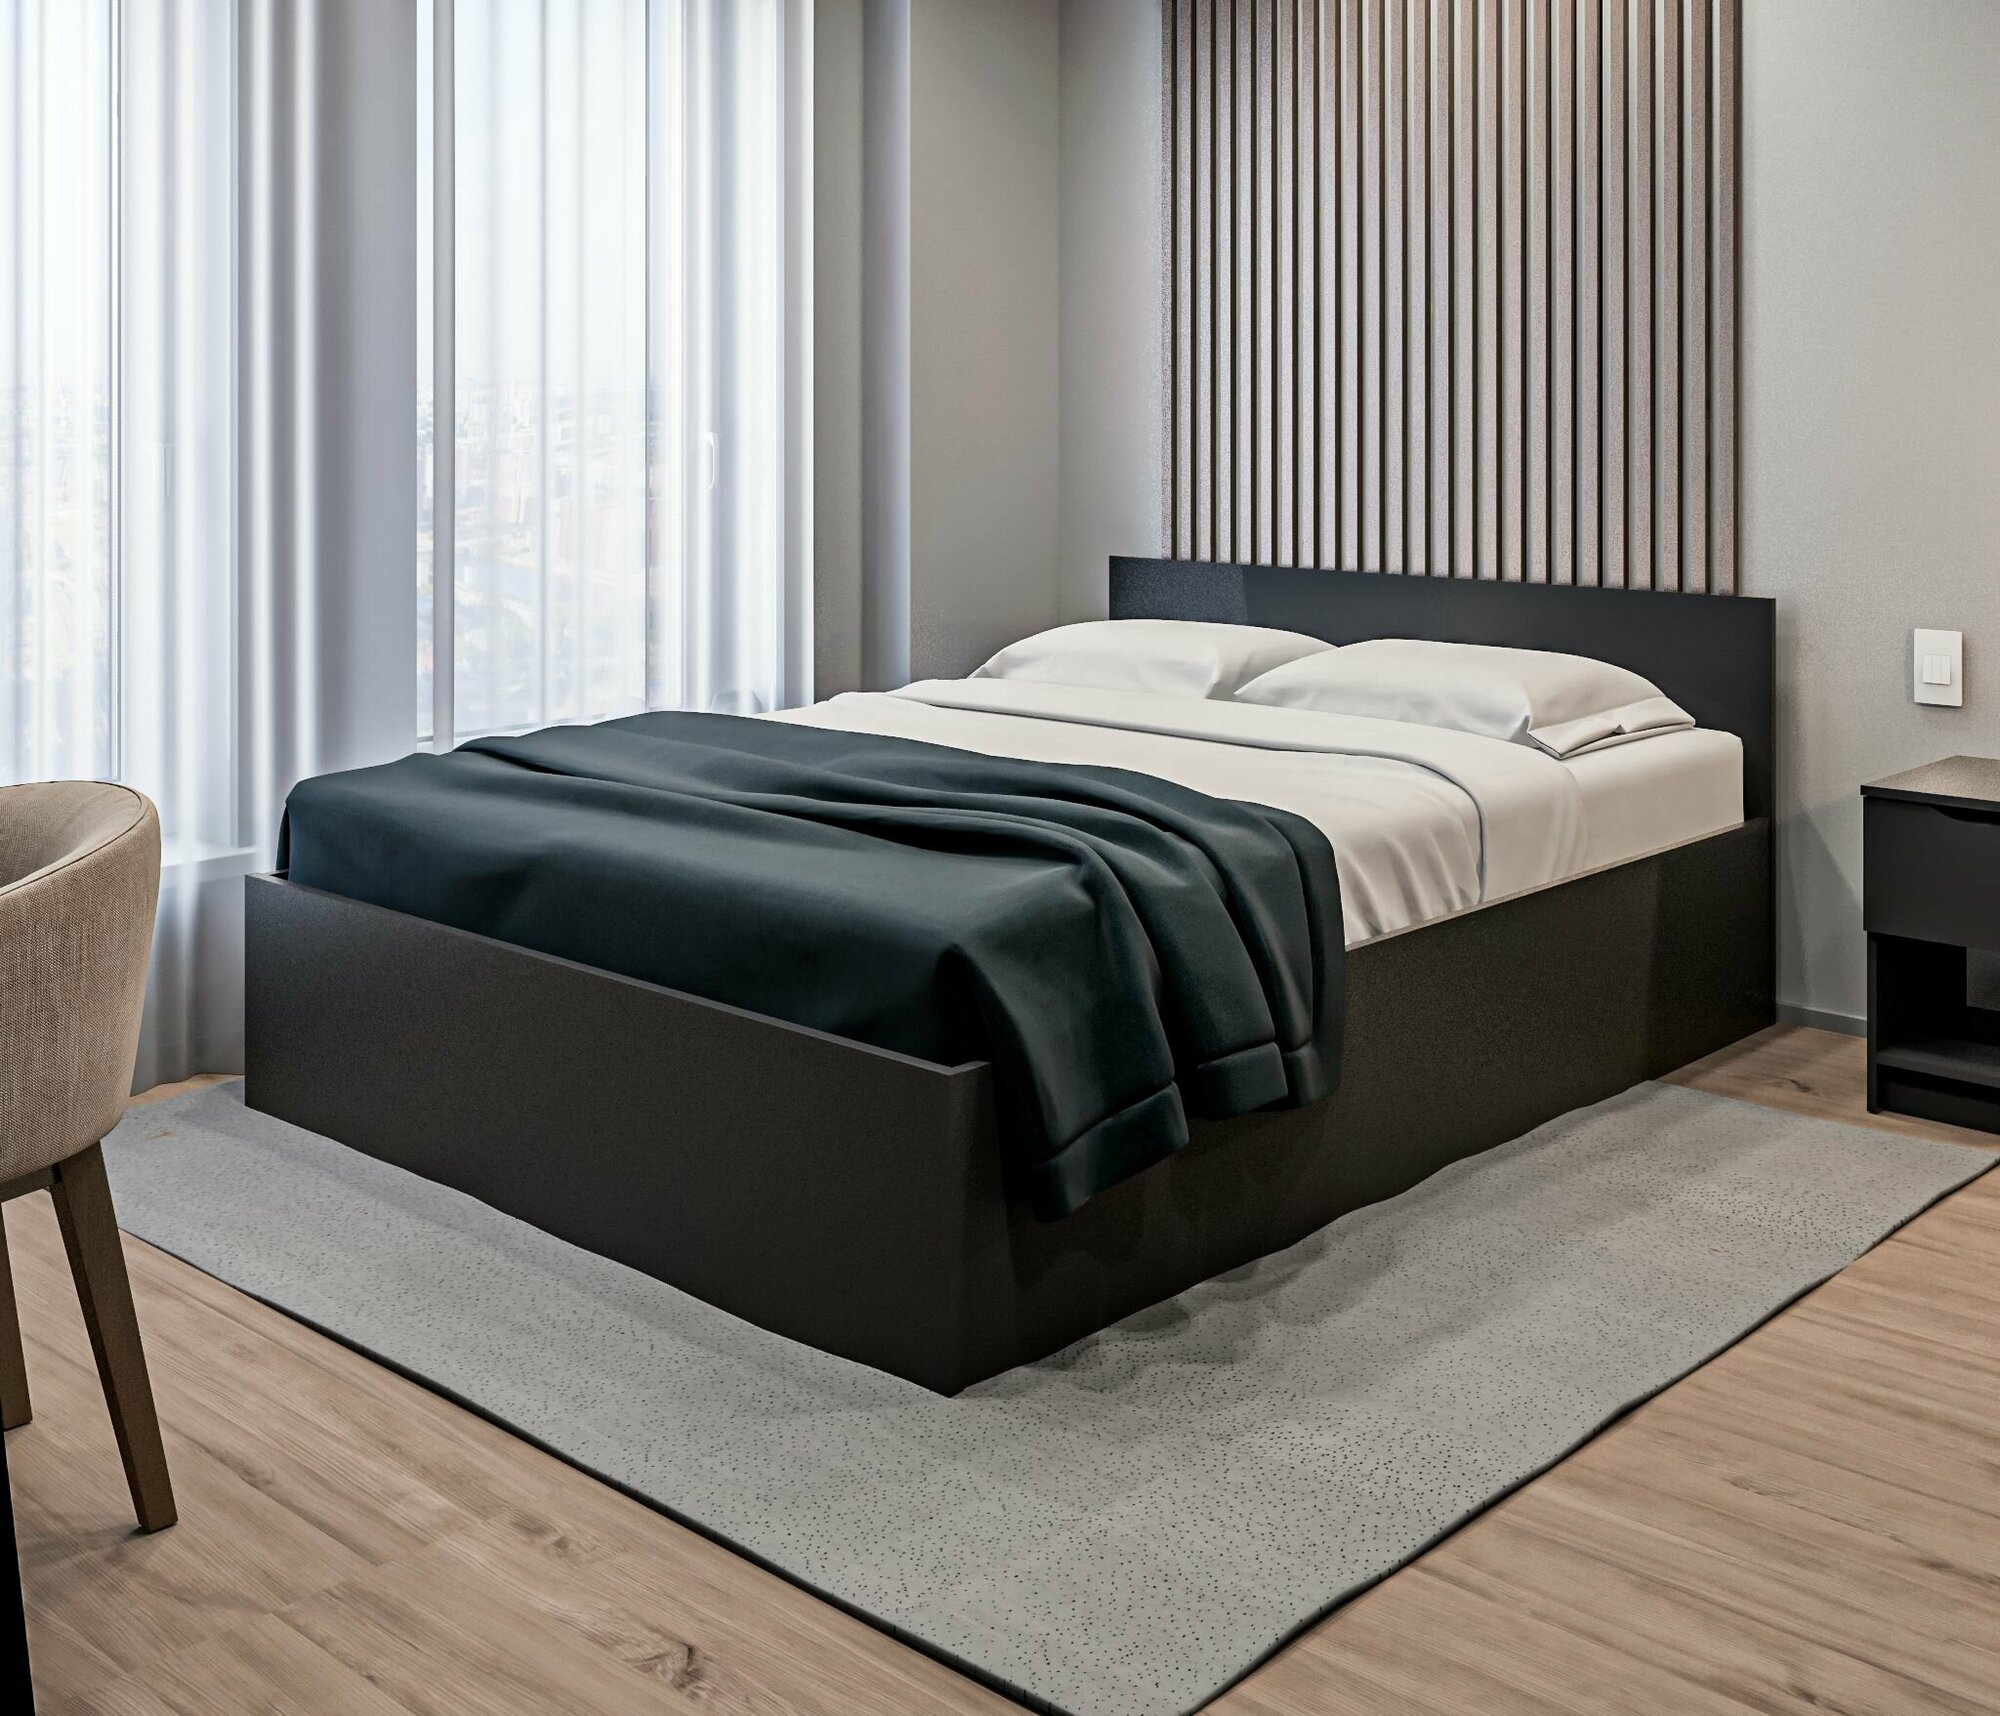 Двуспальная кровать столплит Бруклин СБ-3359 с подъемным механизмом, без матраса, спальное место 160х200см, Диамант серый 165х78х207см